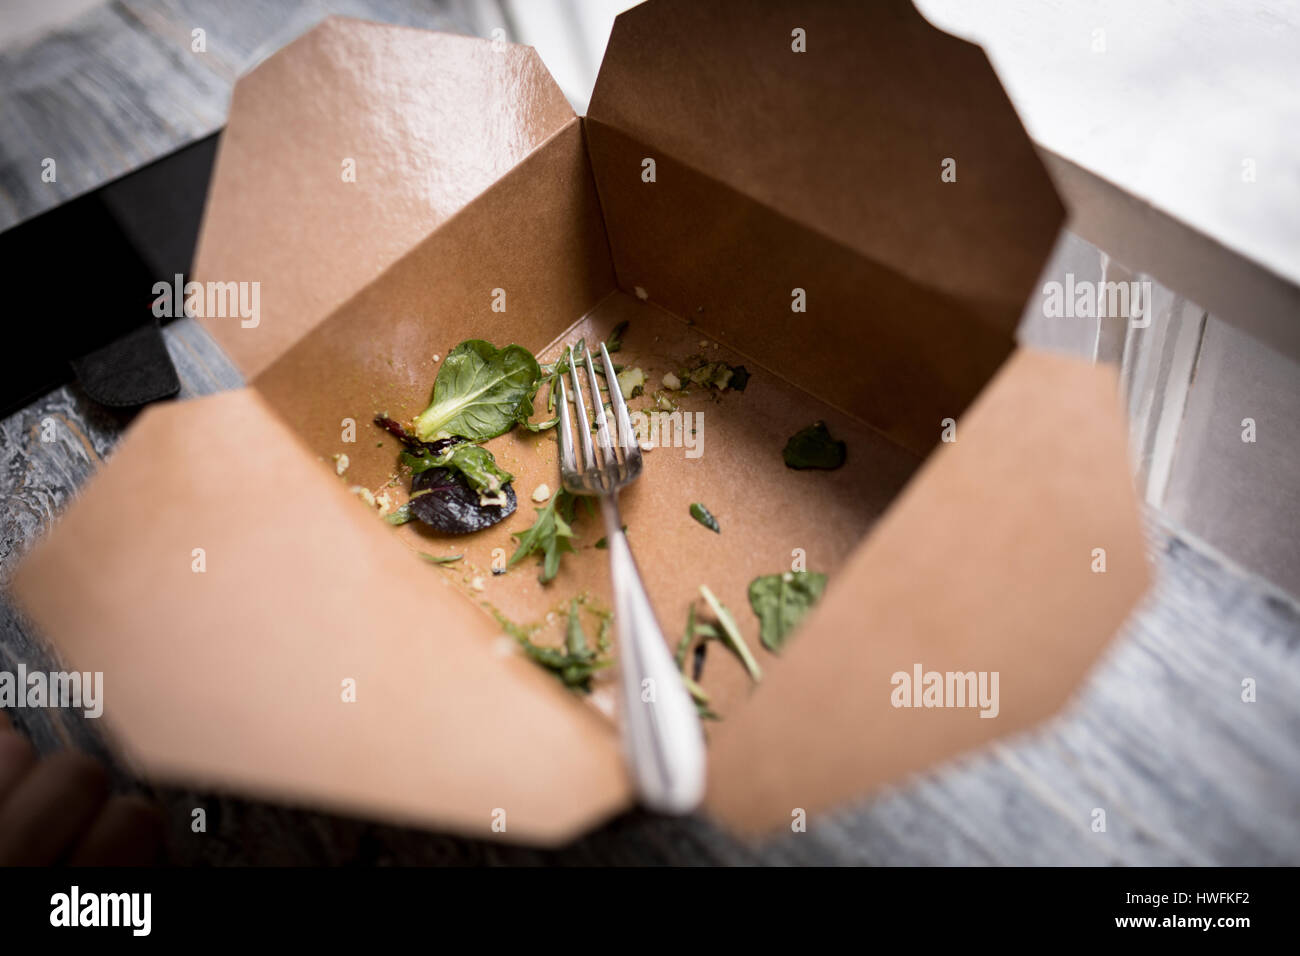 Übrig gebliebene Salat in Essen-Box am CafÃƒÂ © Stockfoto